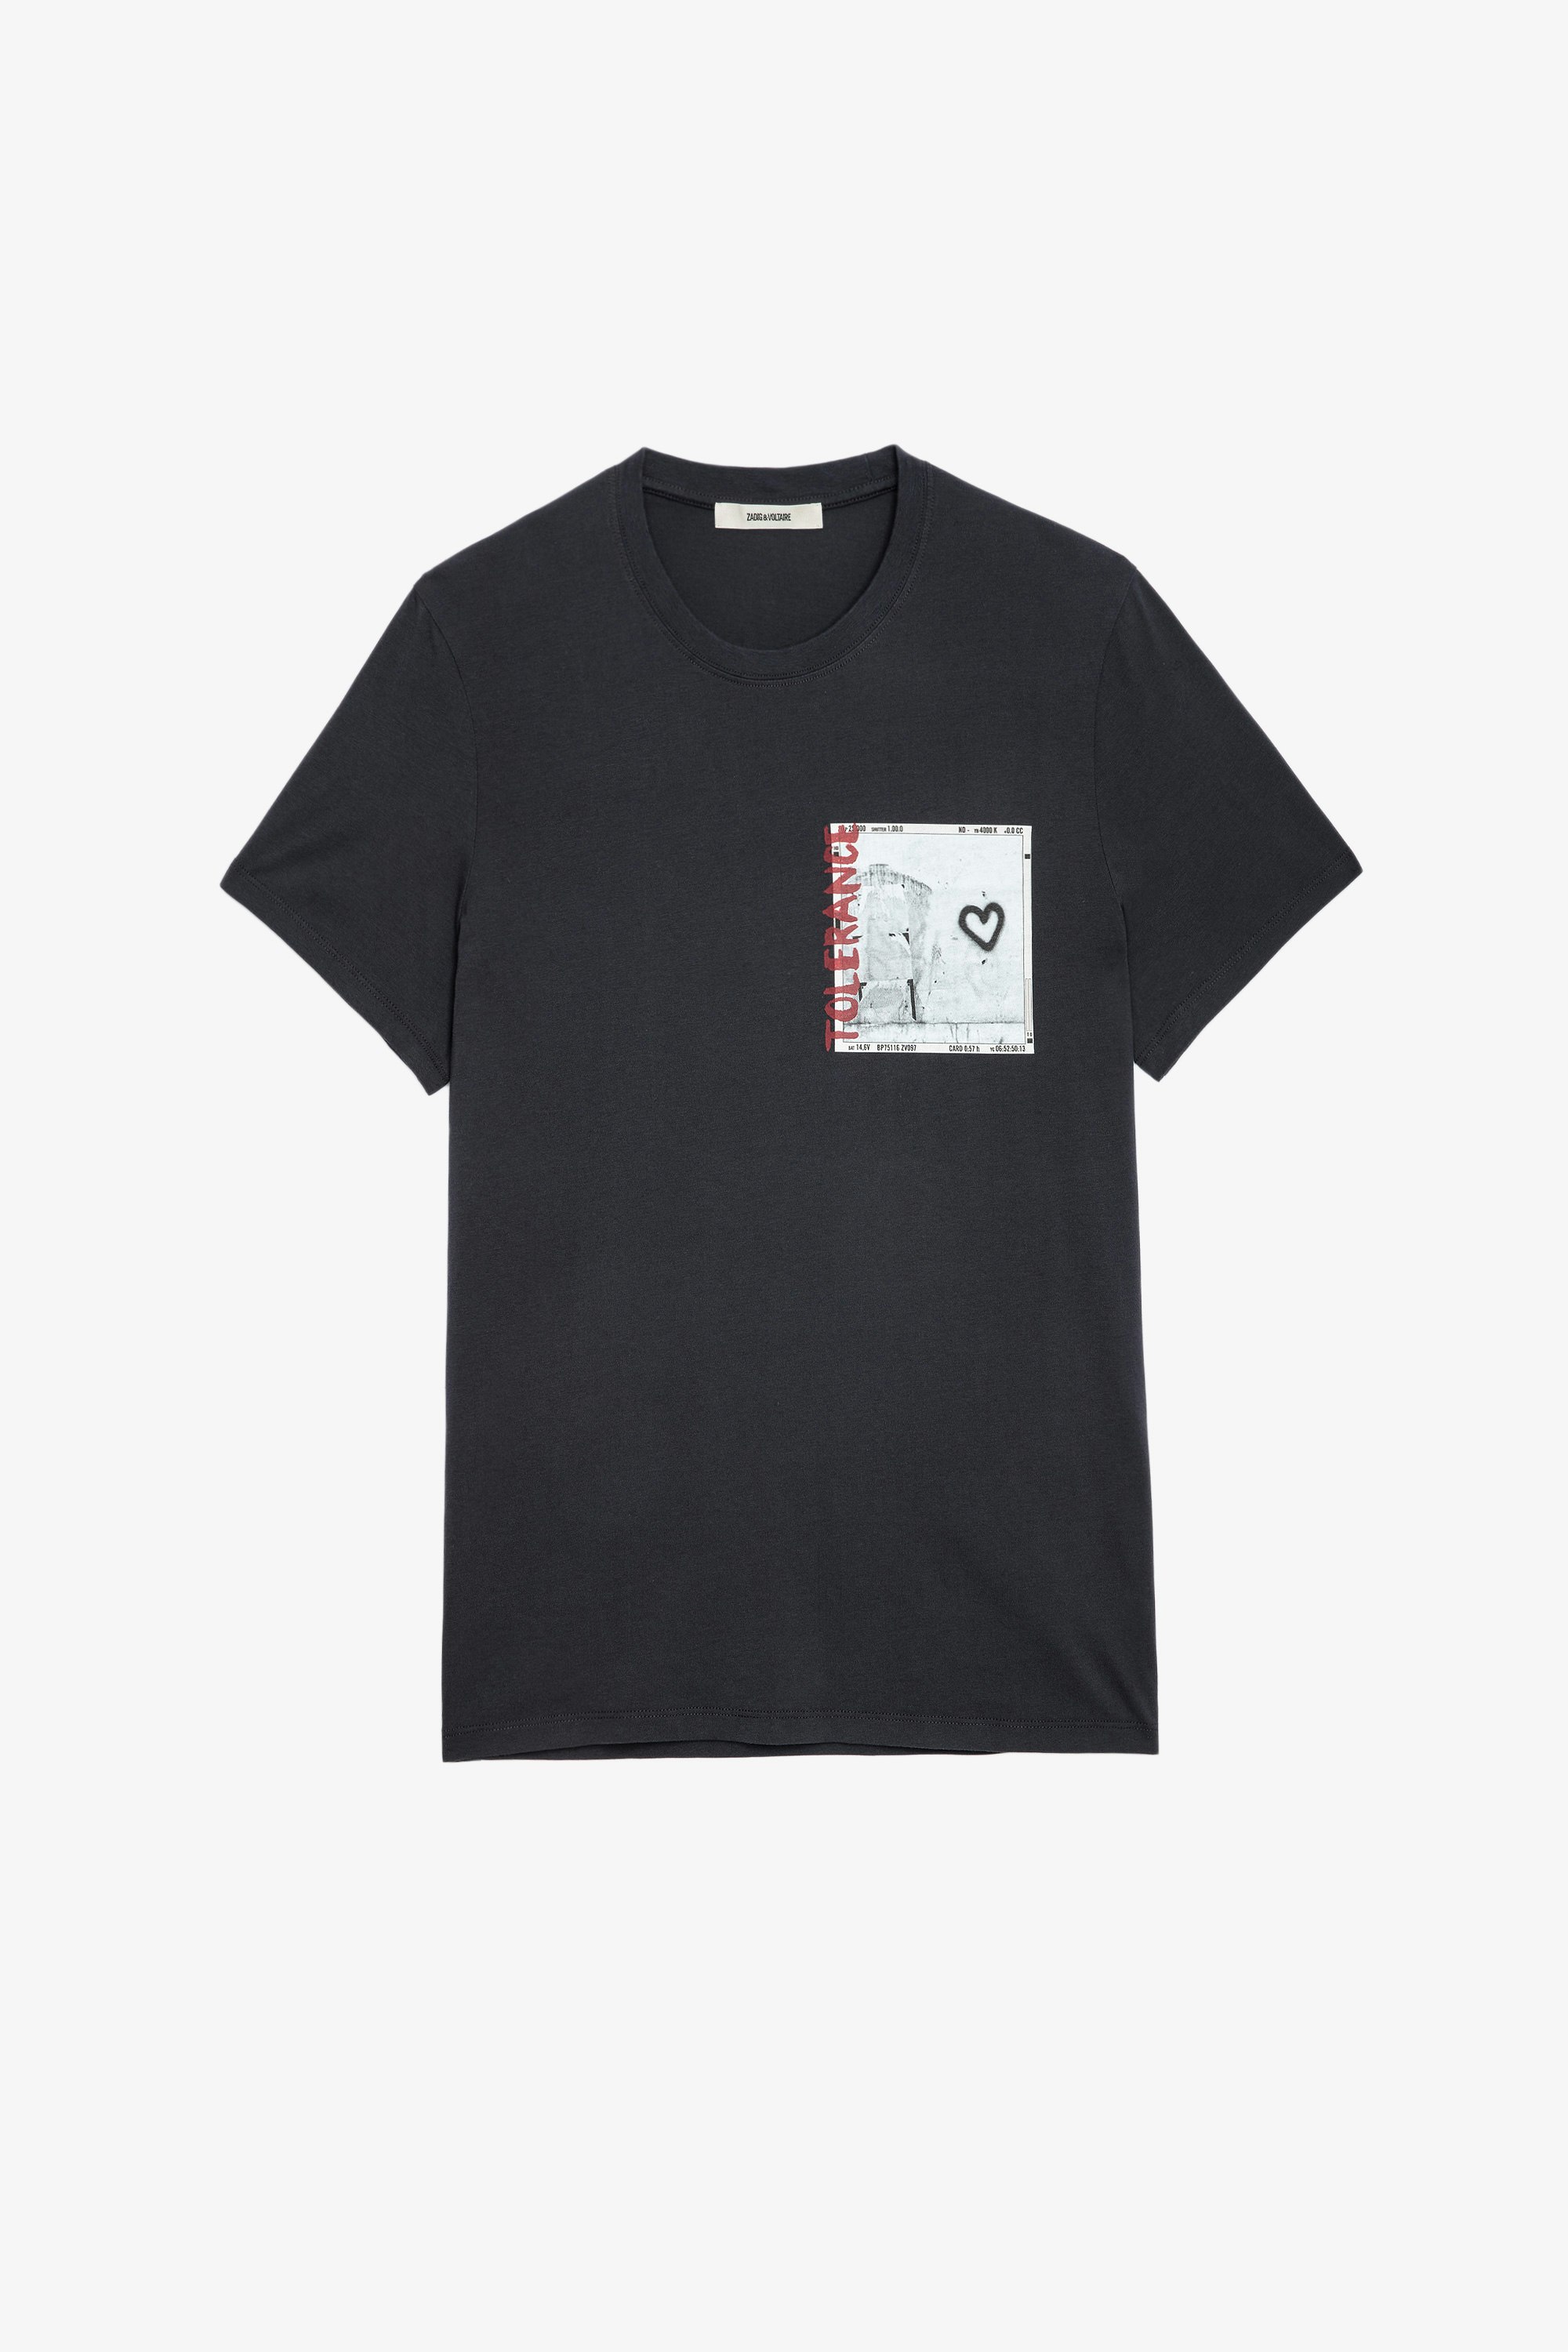 T-Shirt Ted Photoprint Herren-T-Shirt aus anthrazitgrauer Baumwolle mit Fotoprint